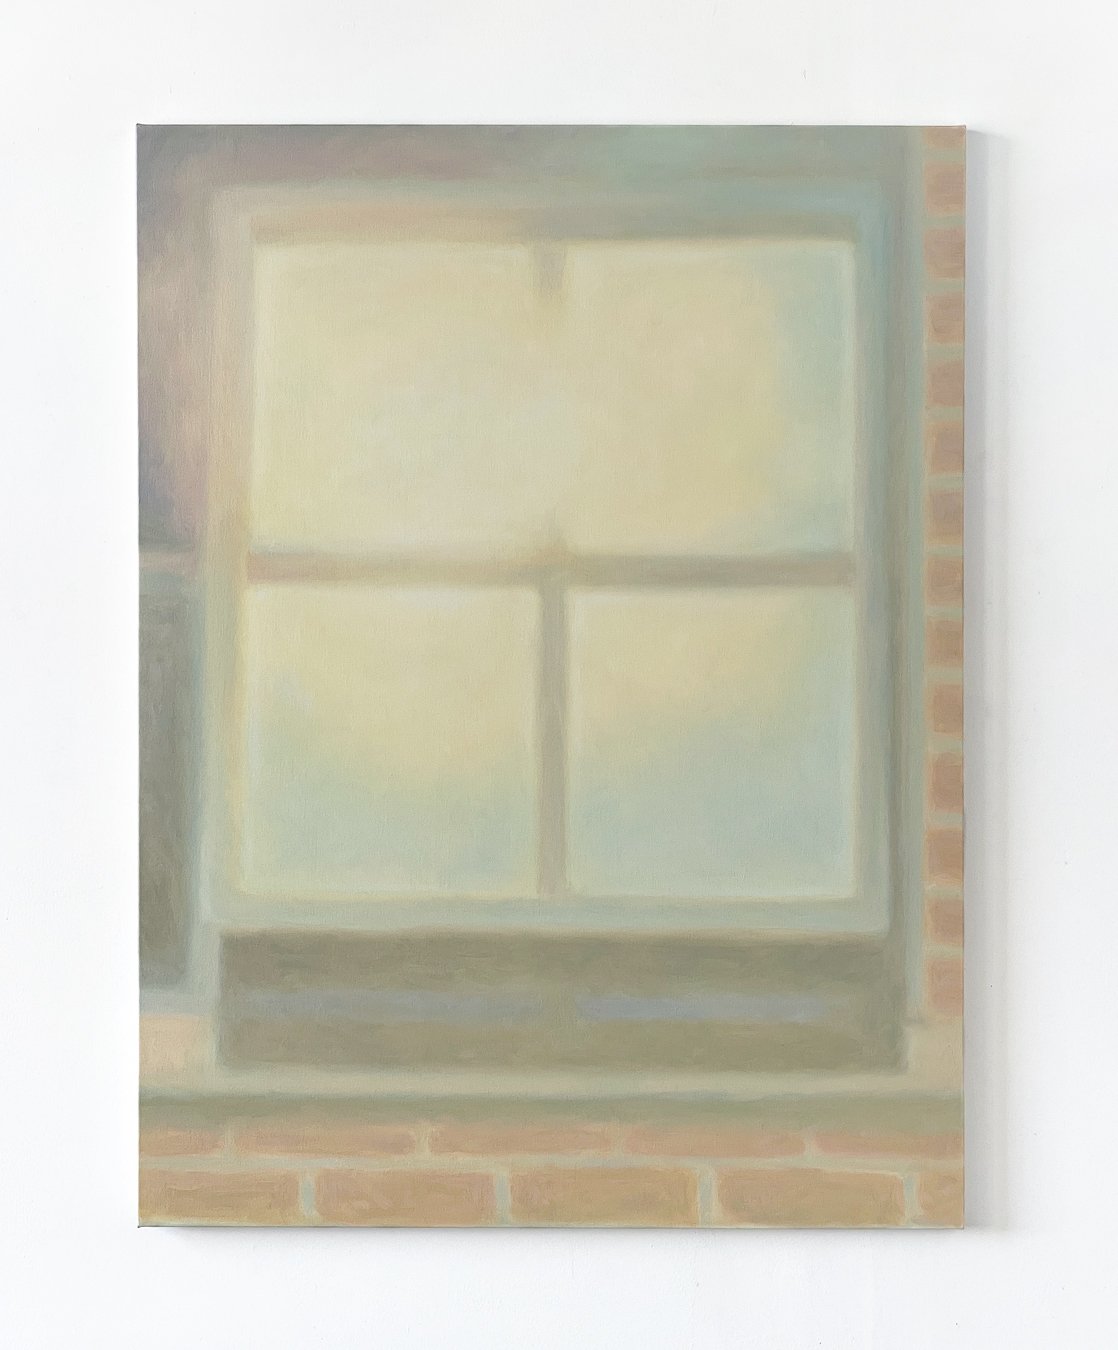  open window, outside  38 x 50 